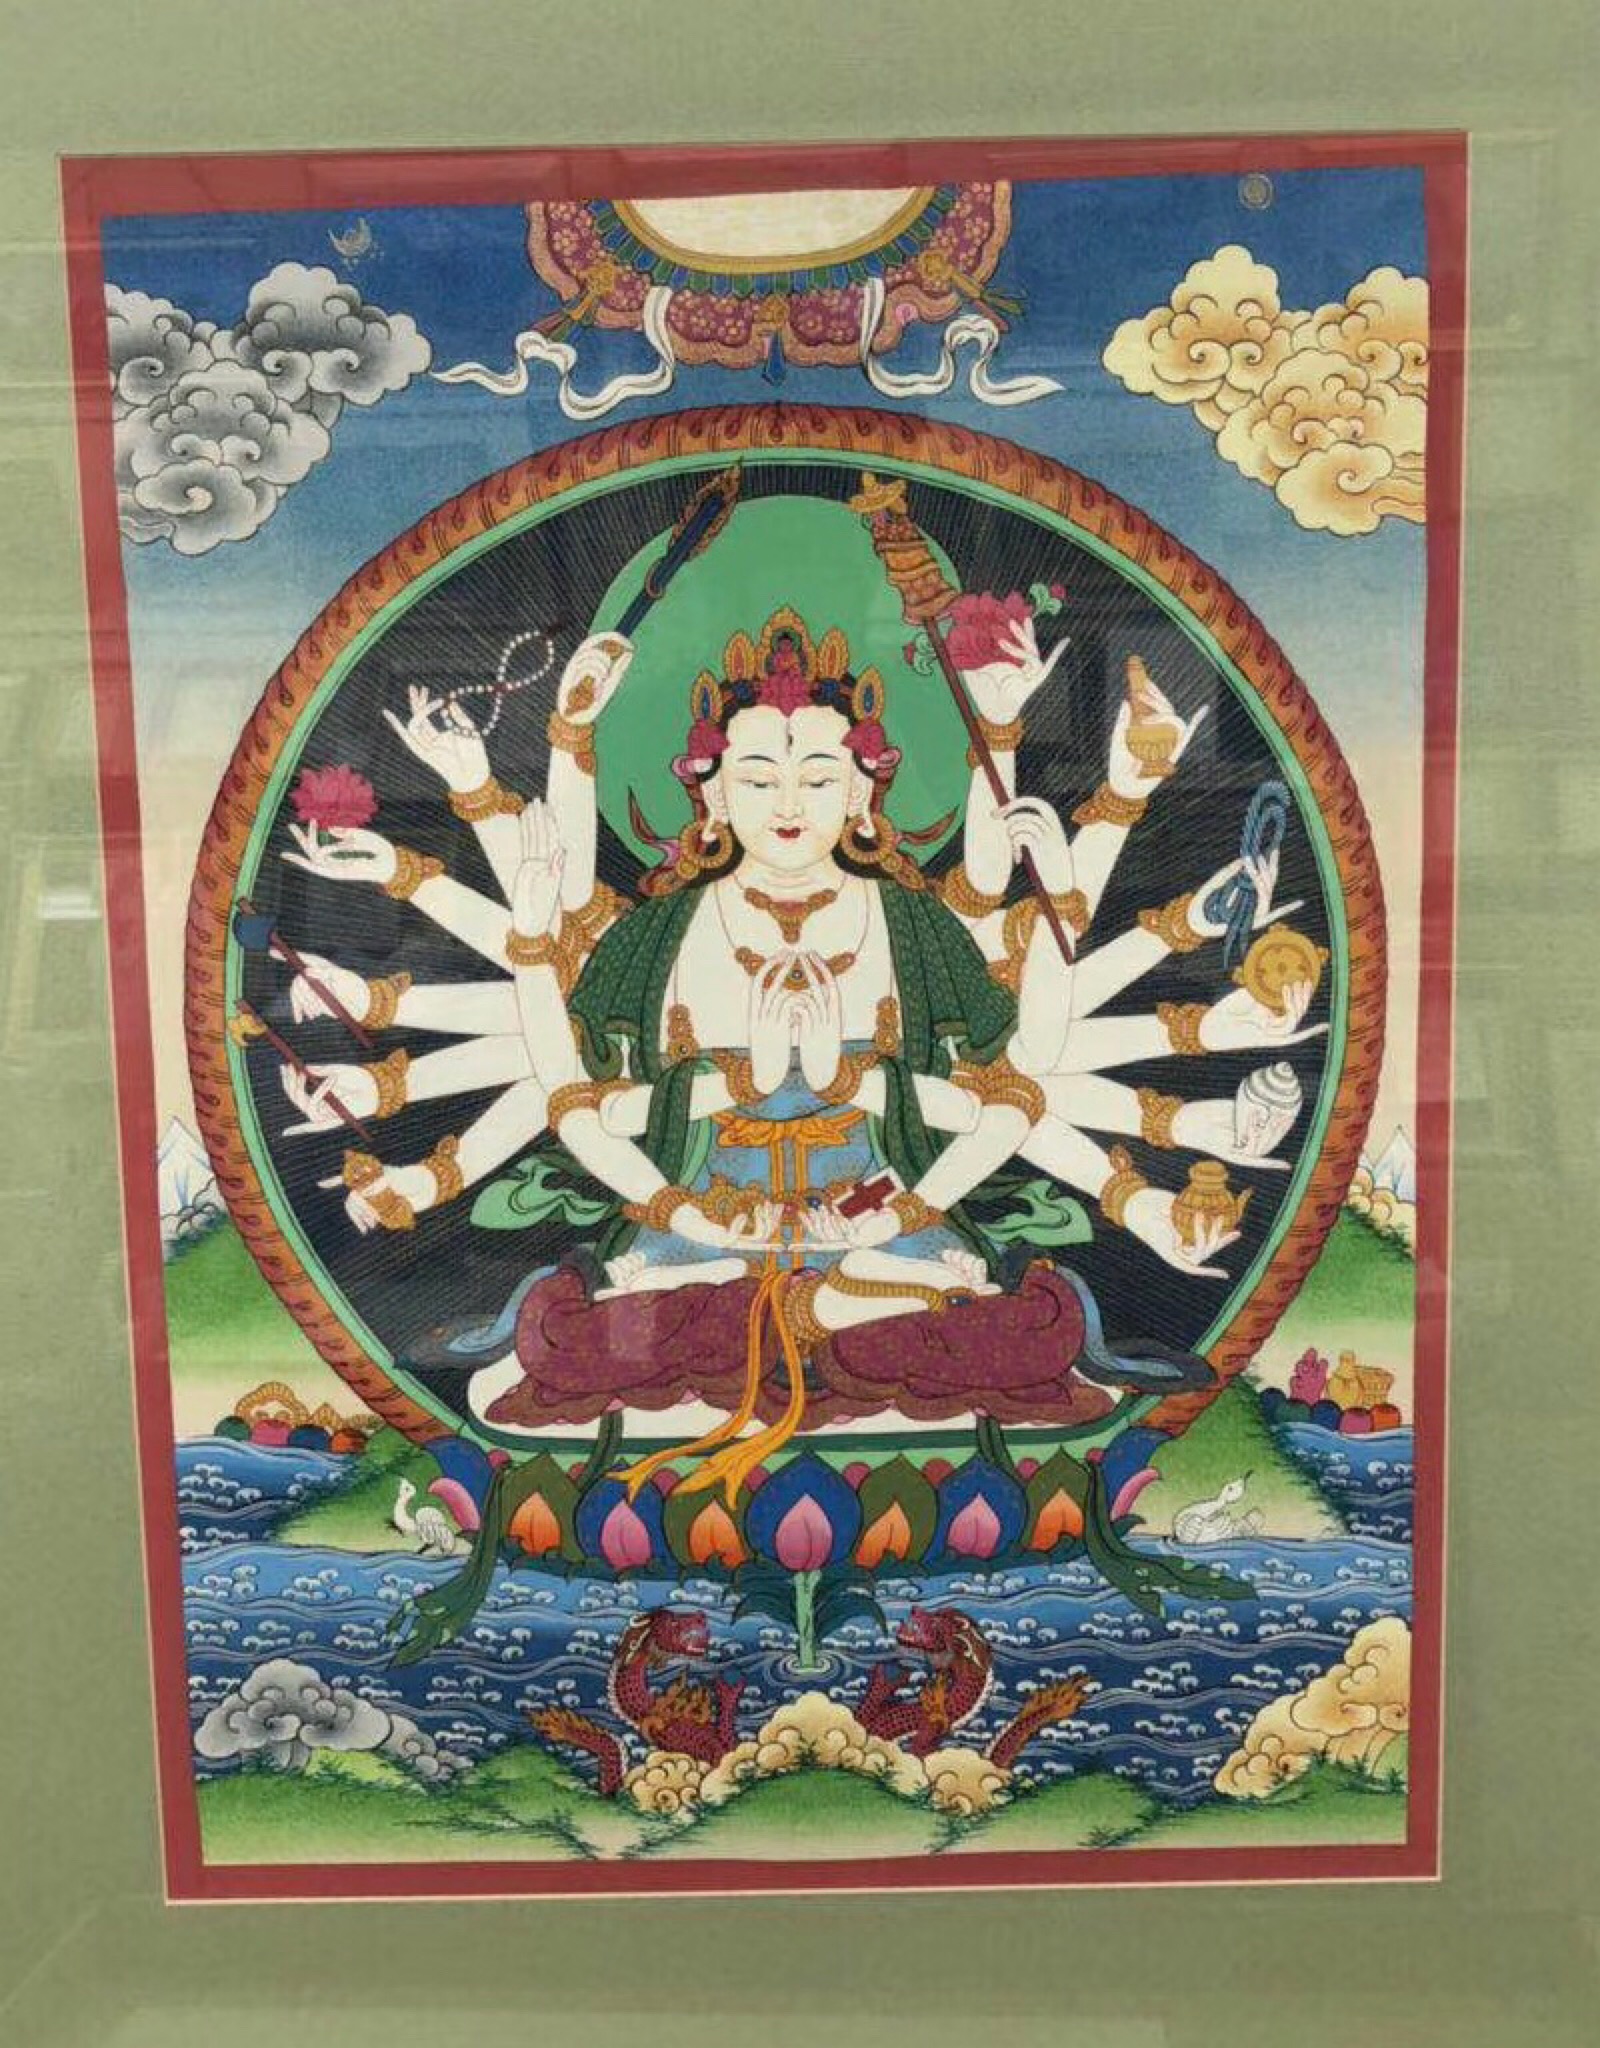 【准提观音】准提观音也叫准提佛母,在汉传佛教和日本佛教,藏传佛教中